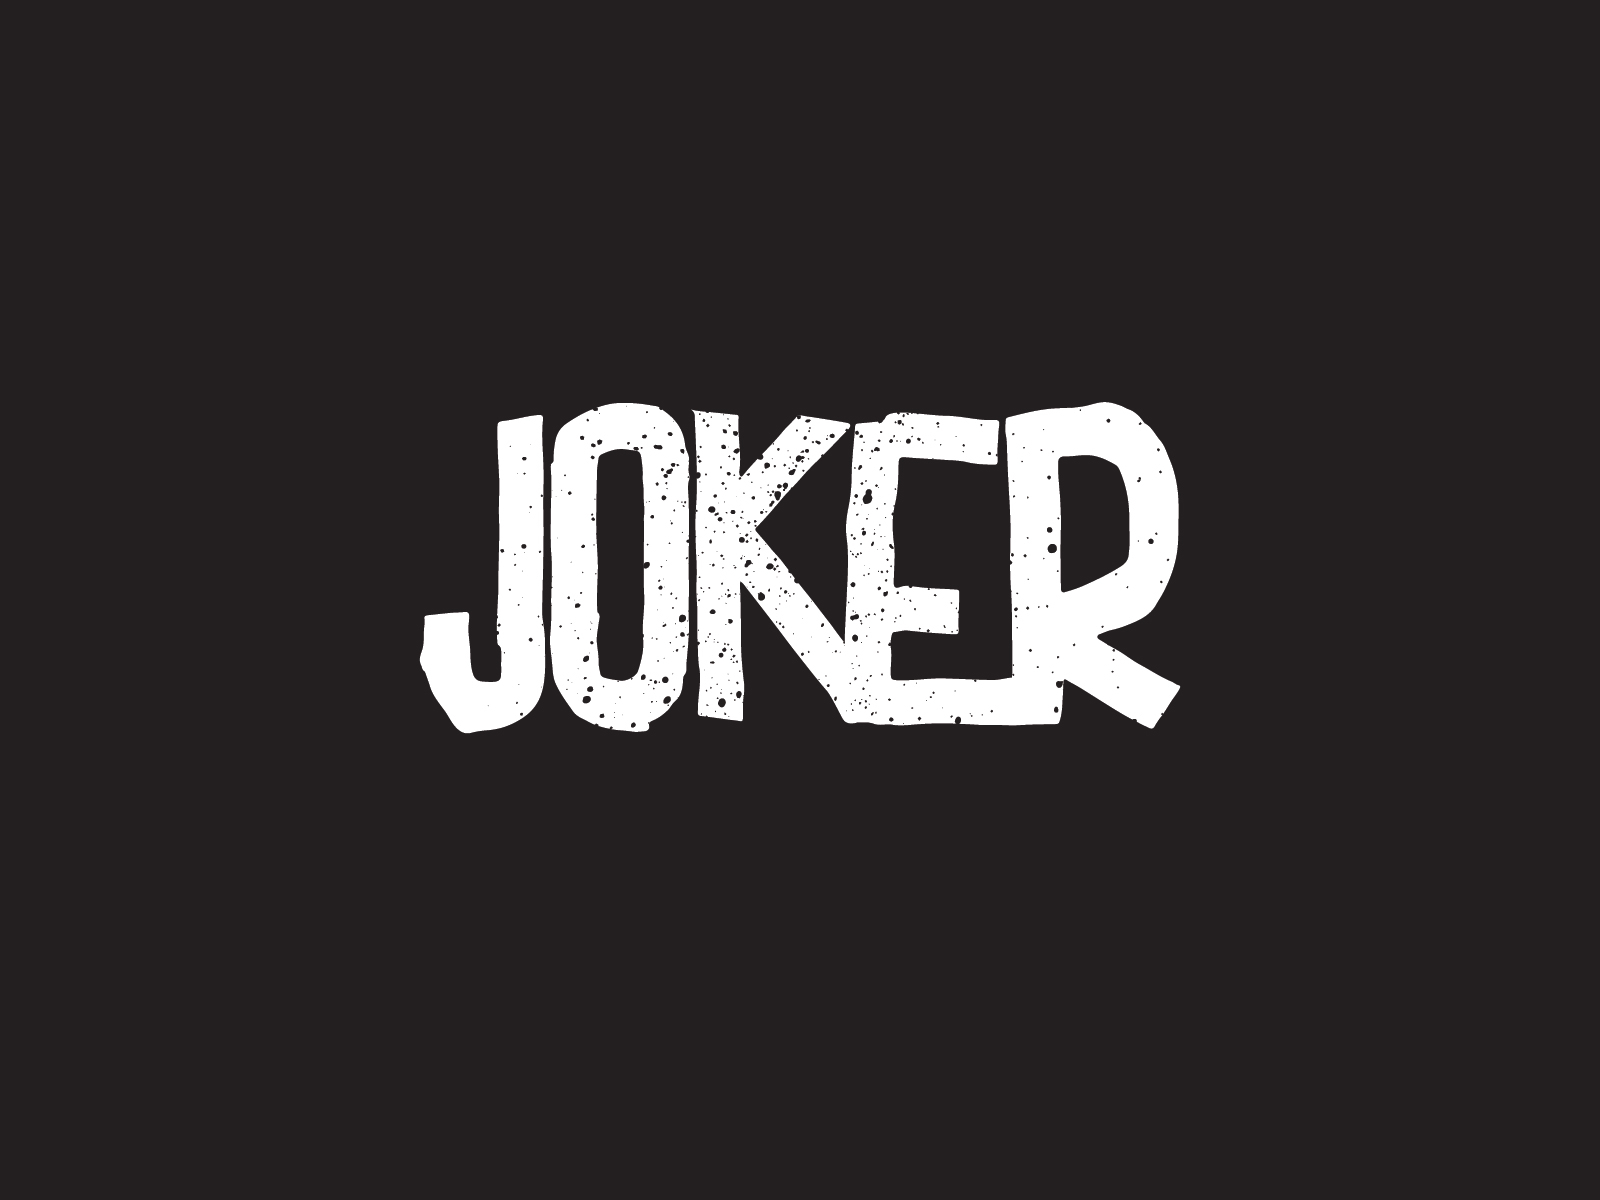 Batman Joker Logo, free icon, monochrome, dc Comics png | PNGEgg